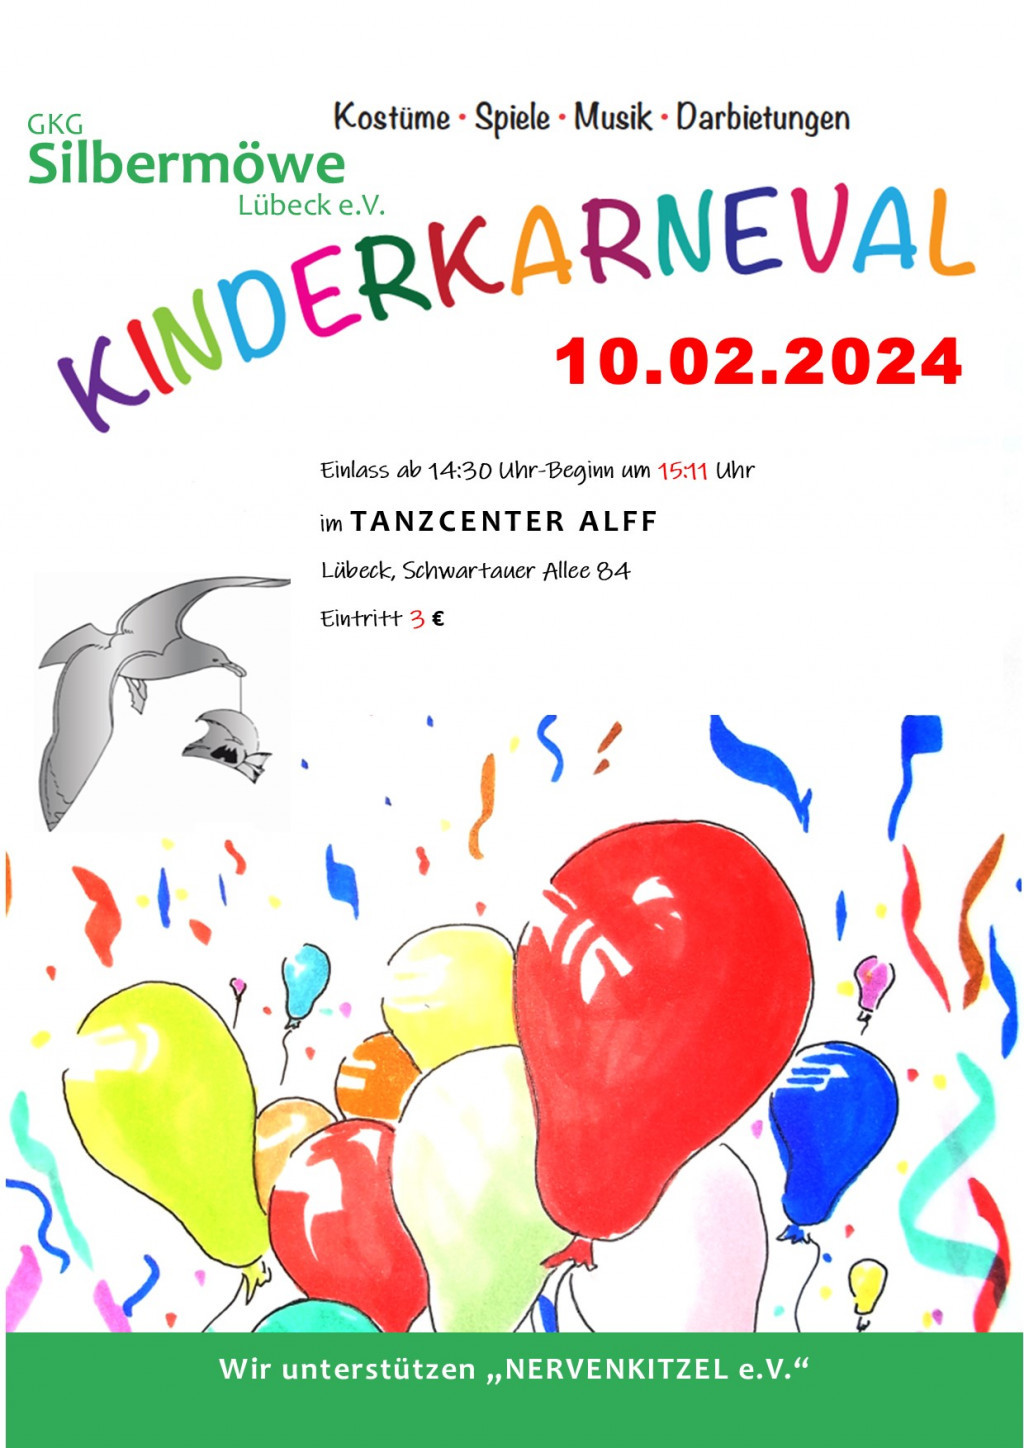 Kinderkarneval 2024 | Foto: Silbermöwe